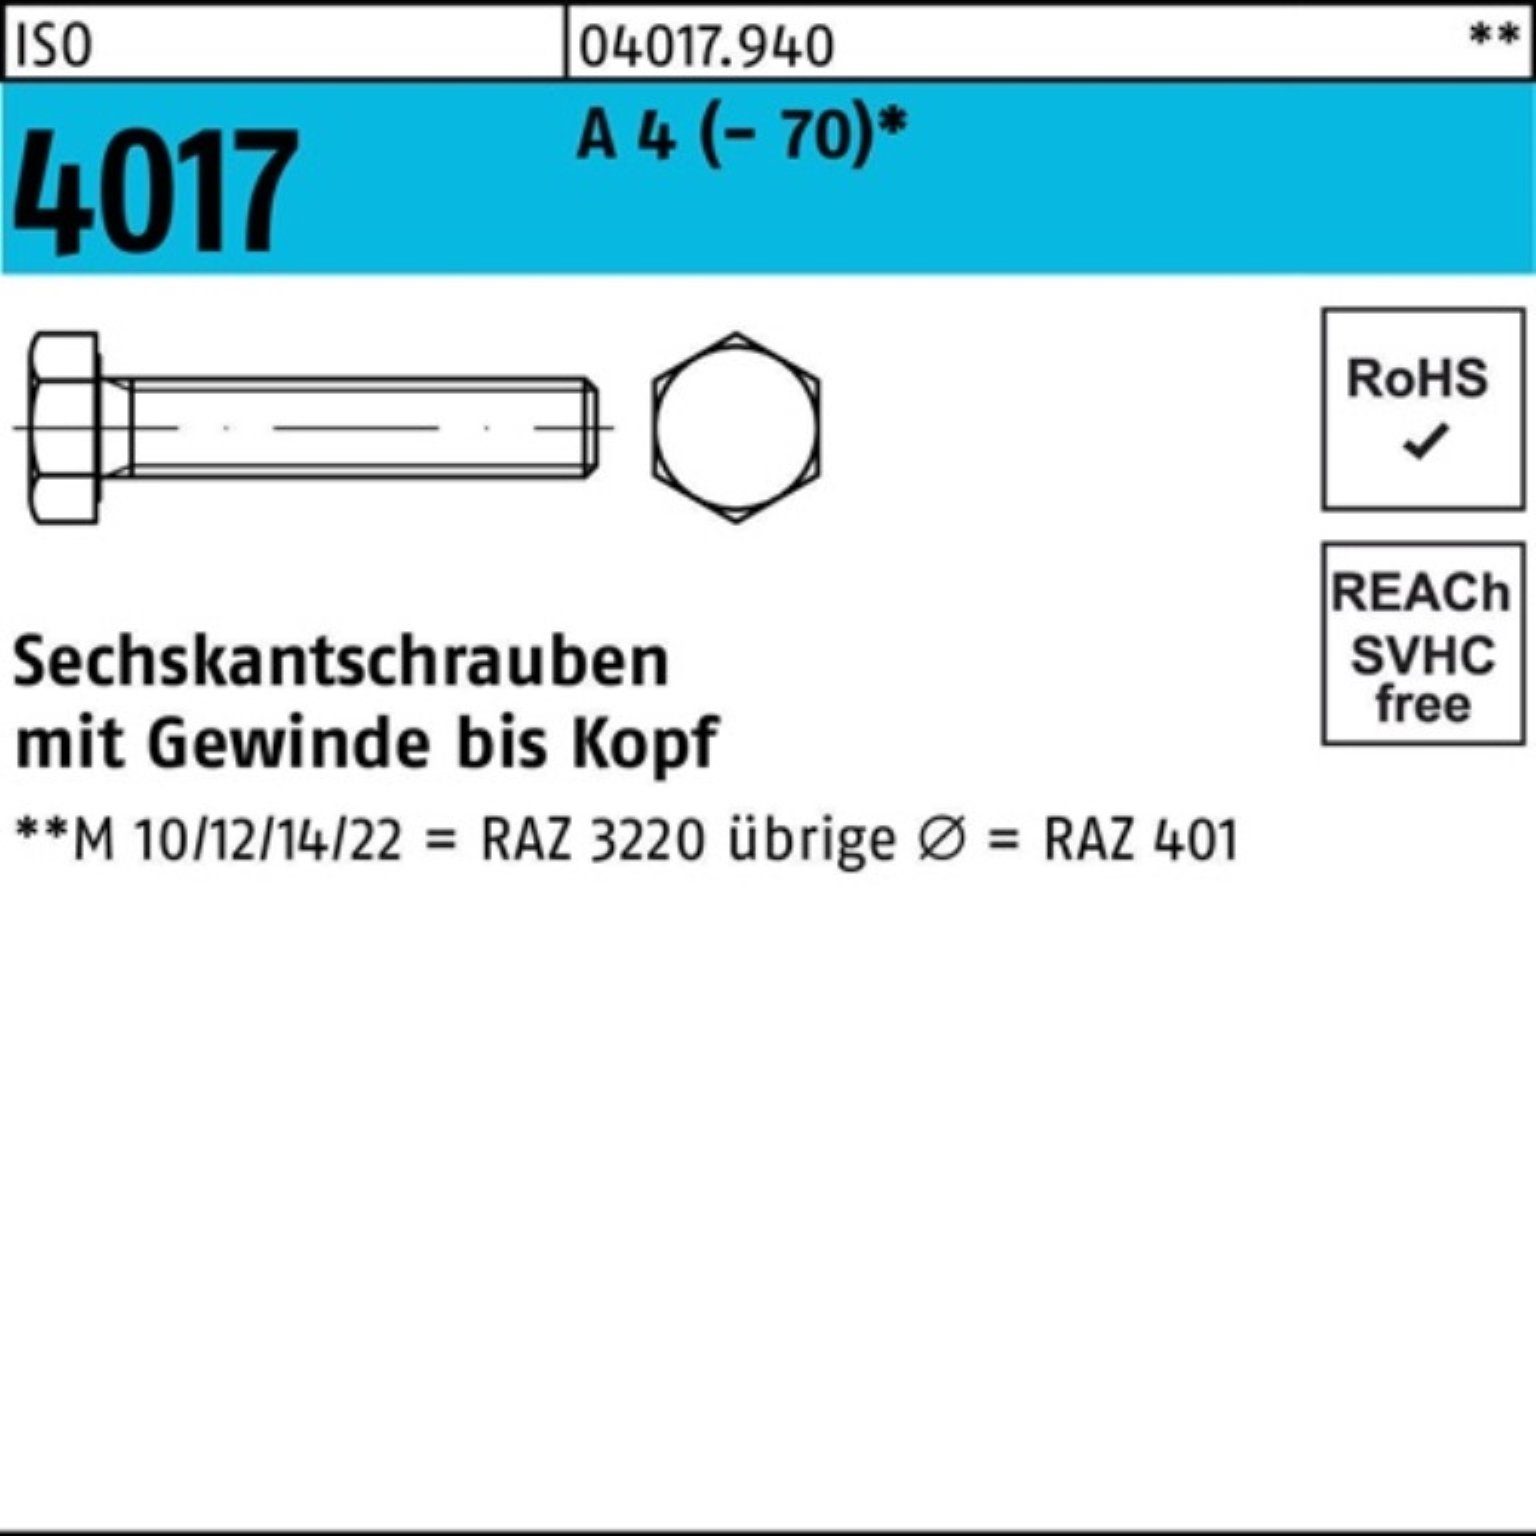 Bufab Sechskantschraube 100er Pack Sechskantschraube ISO 4017 VG M14x 100 A 4 (70) 50 Stück